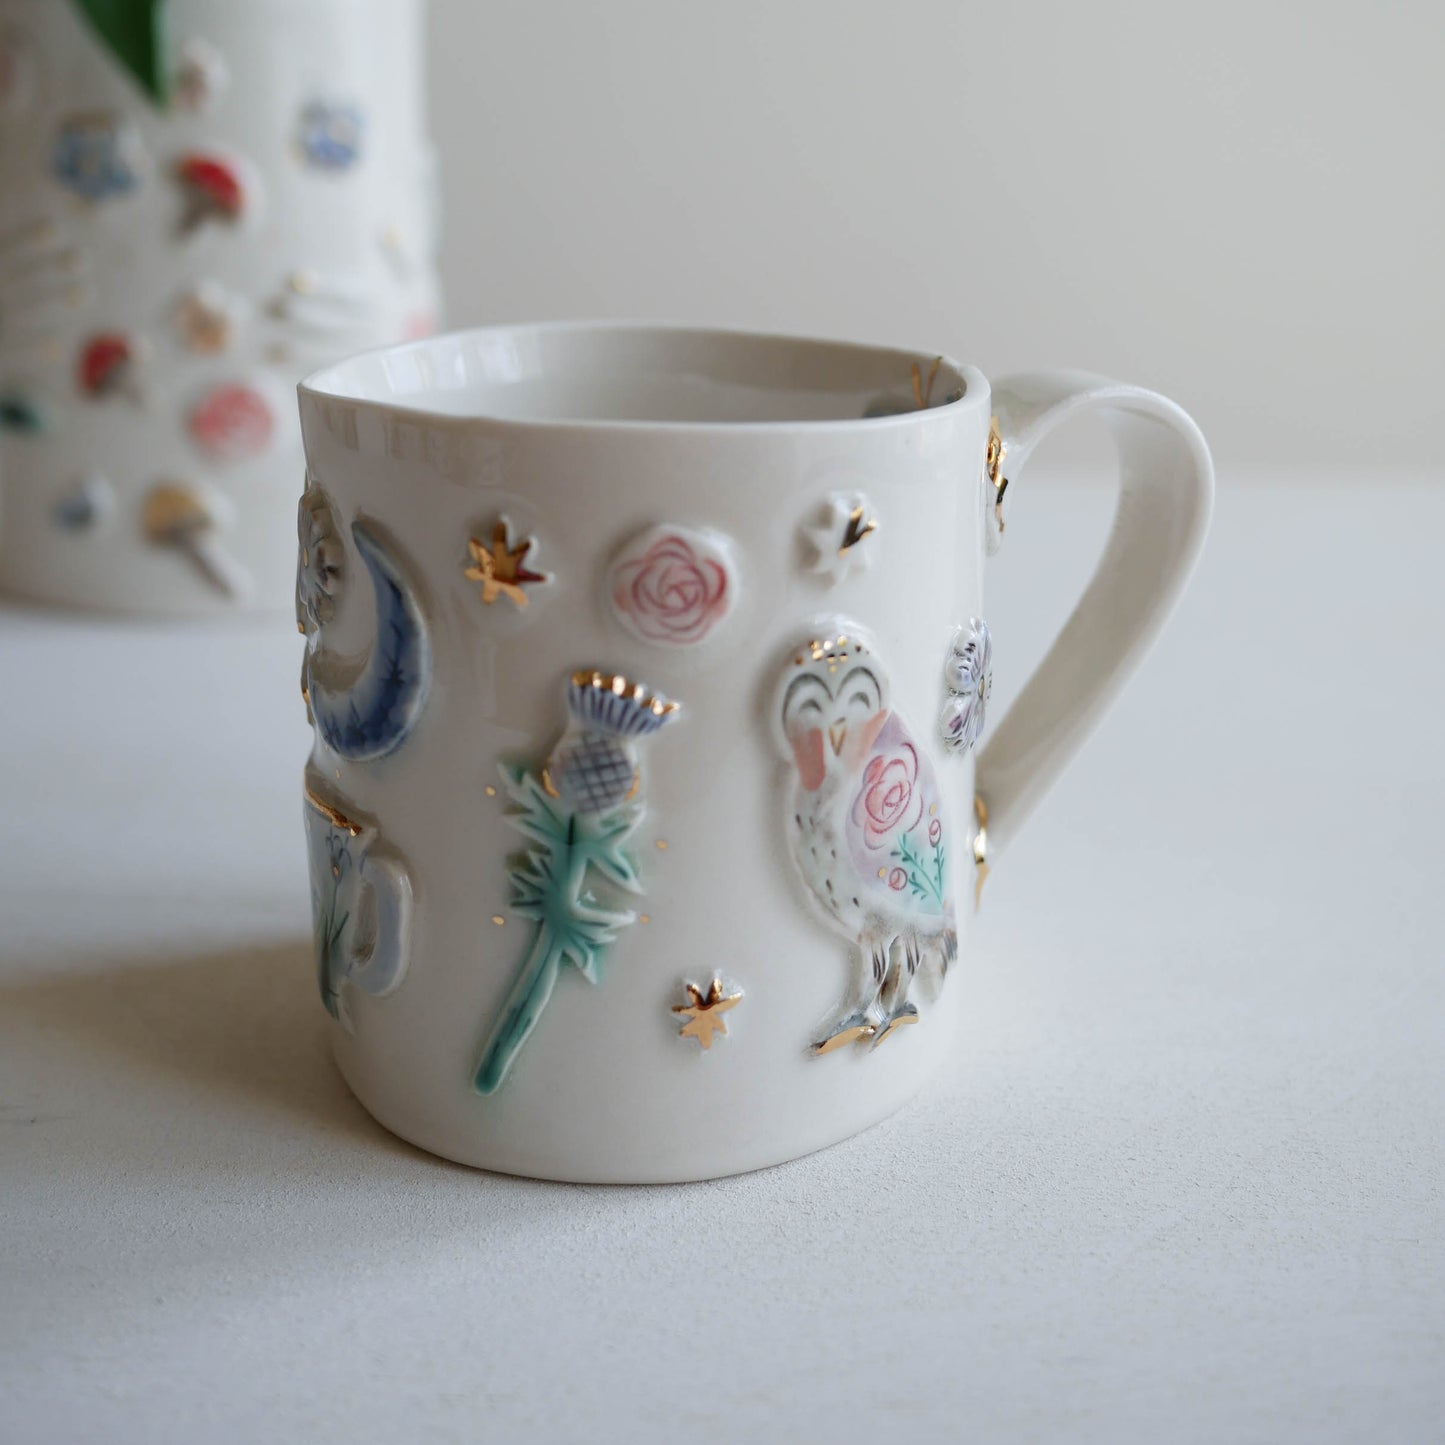 Mug * Tea leaf reading, thistle, rabbit, owl